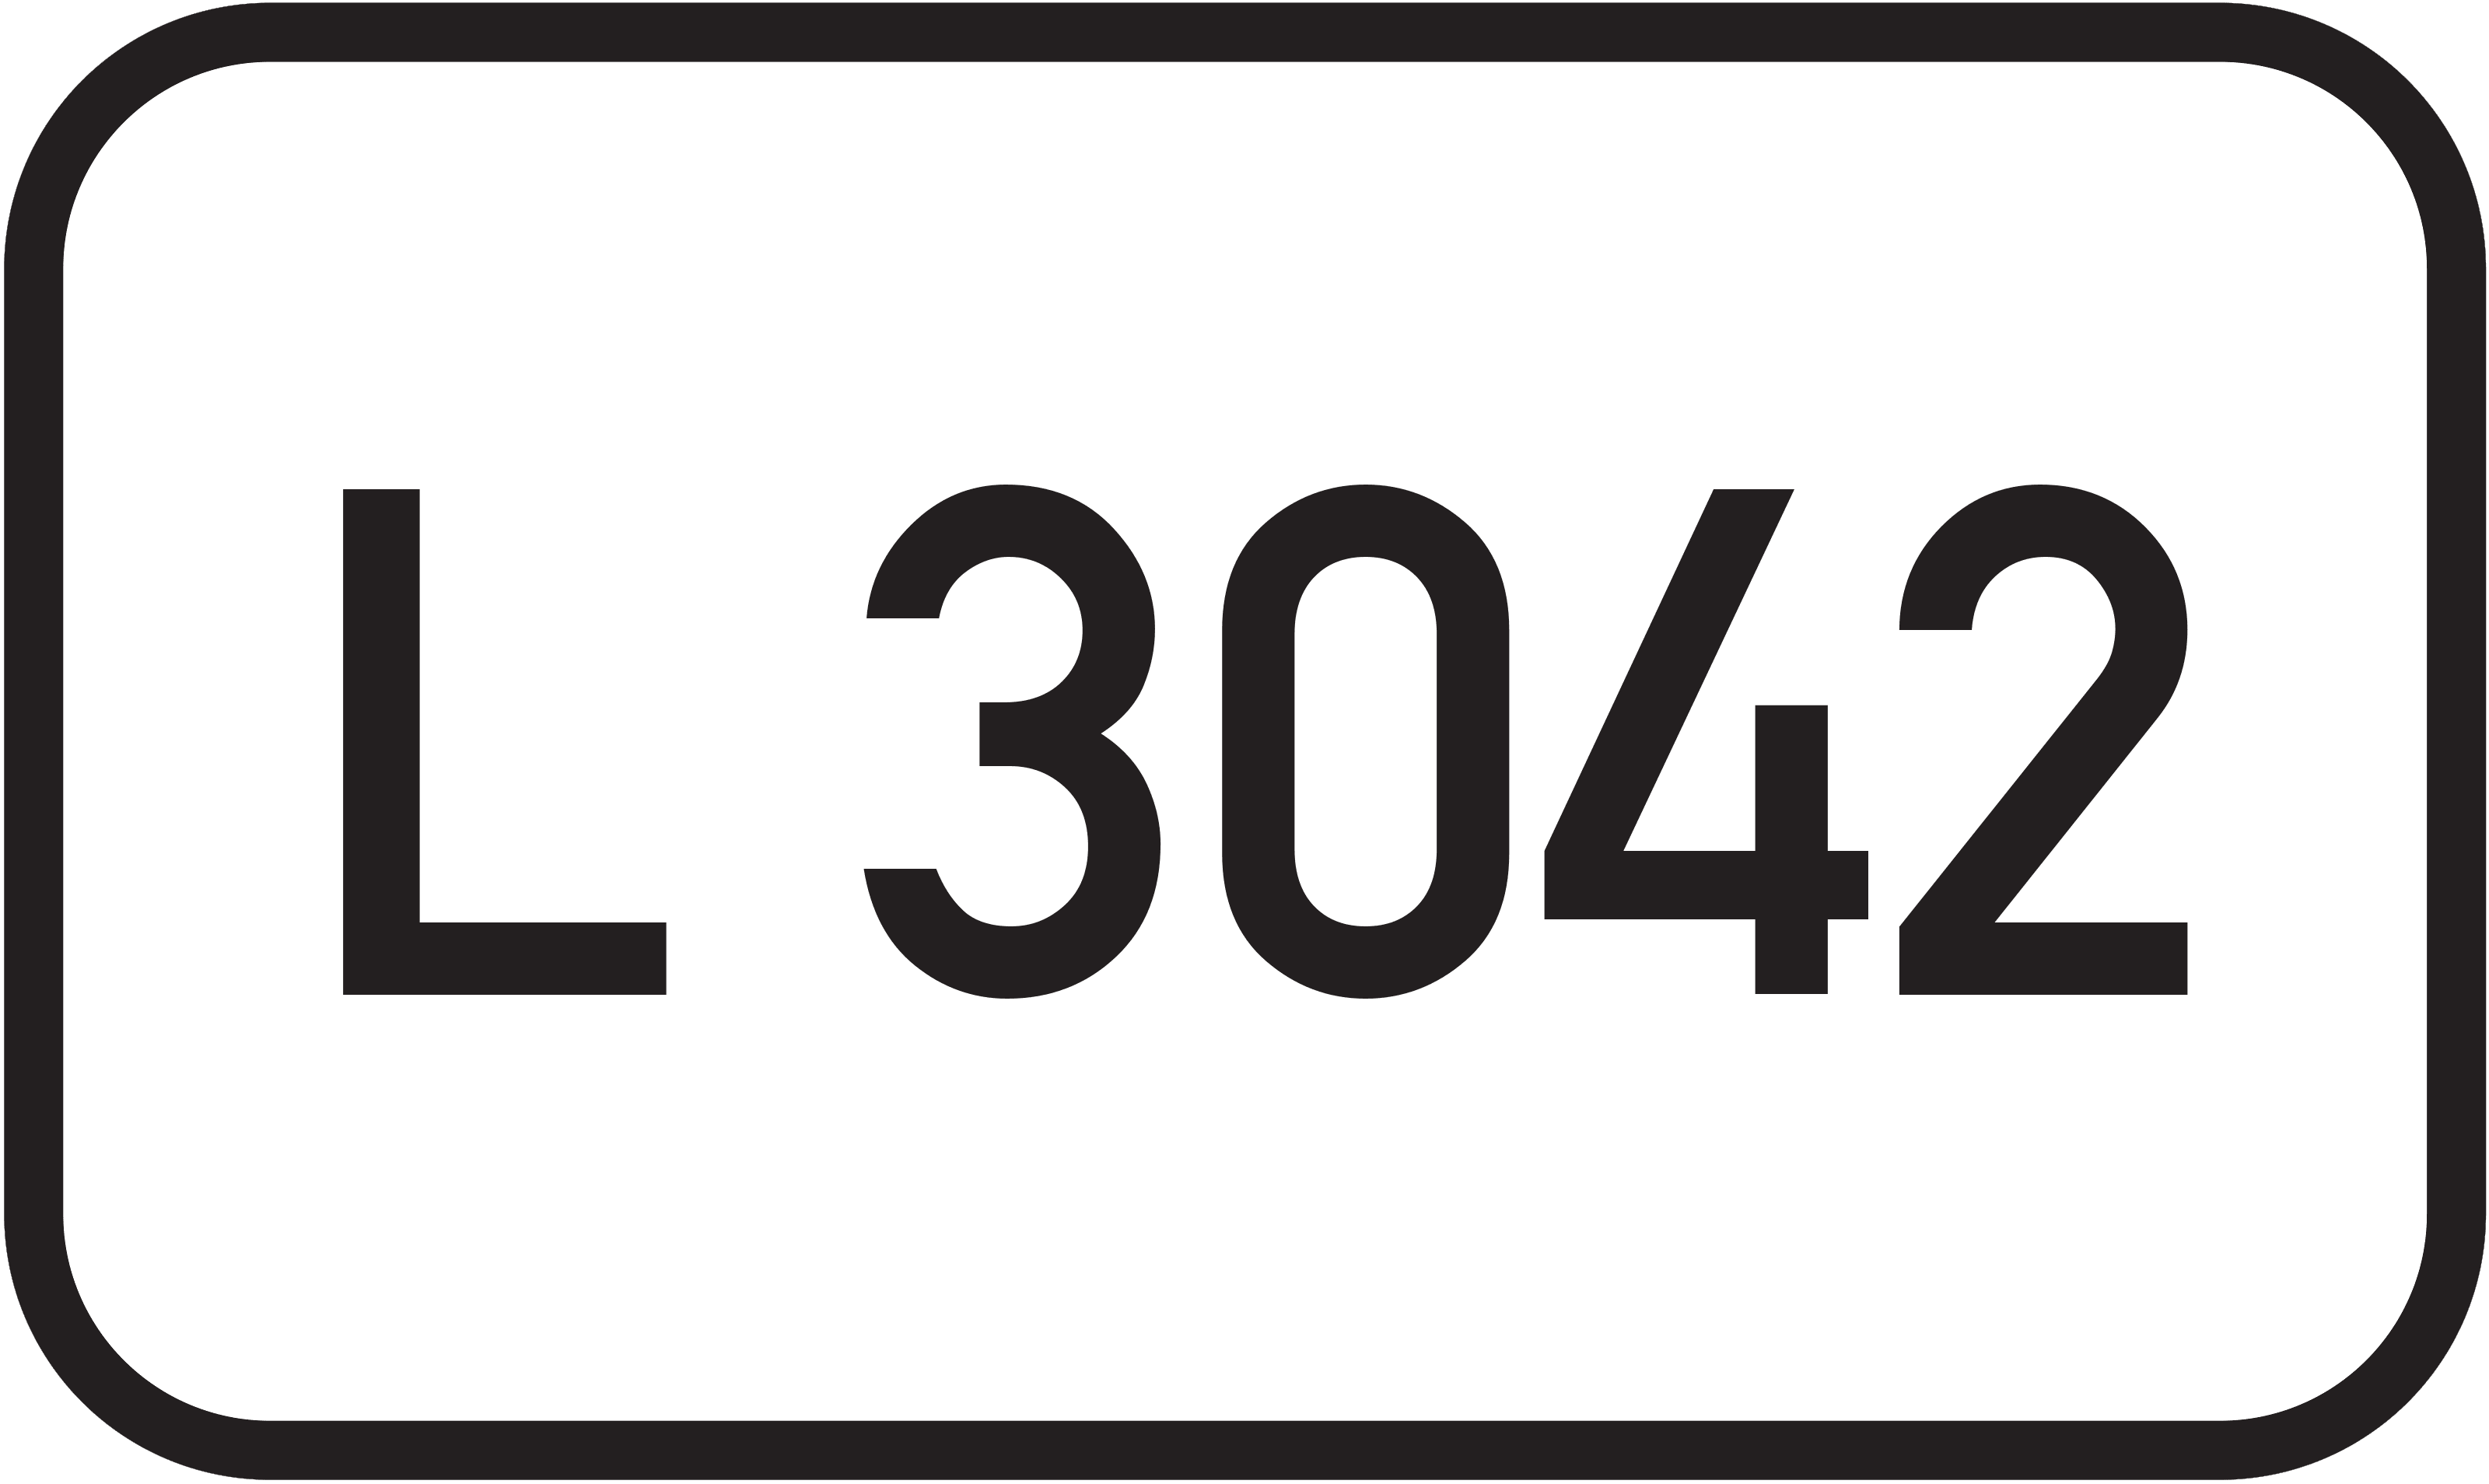 Landesstraße L 3042